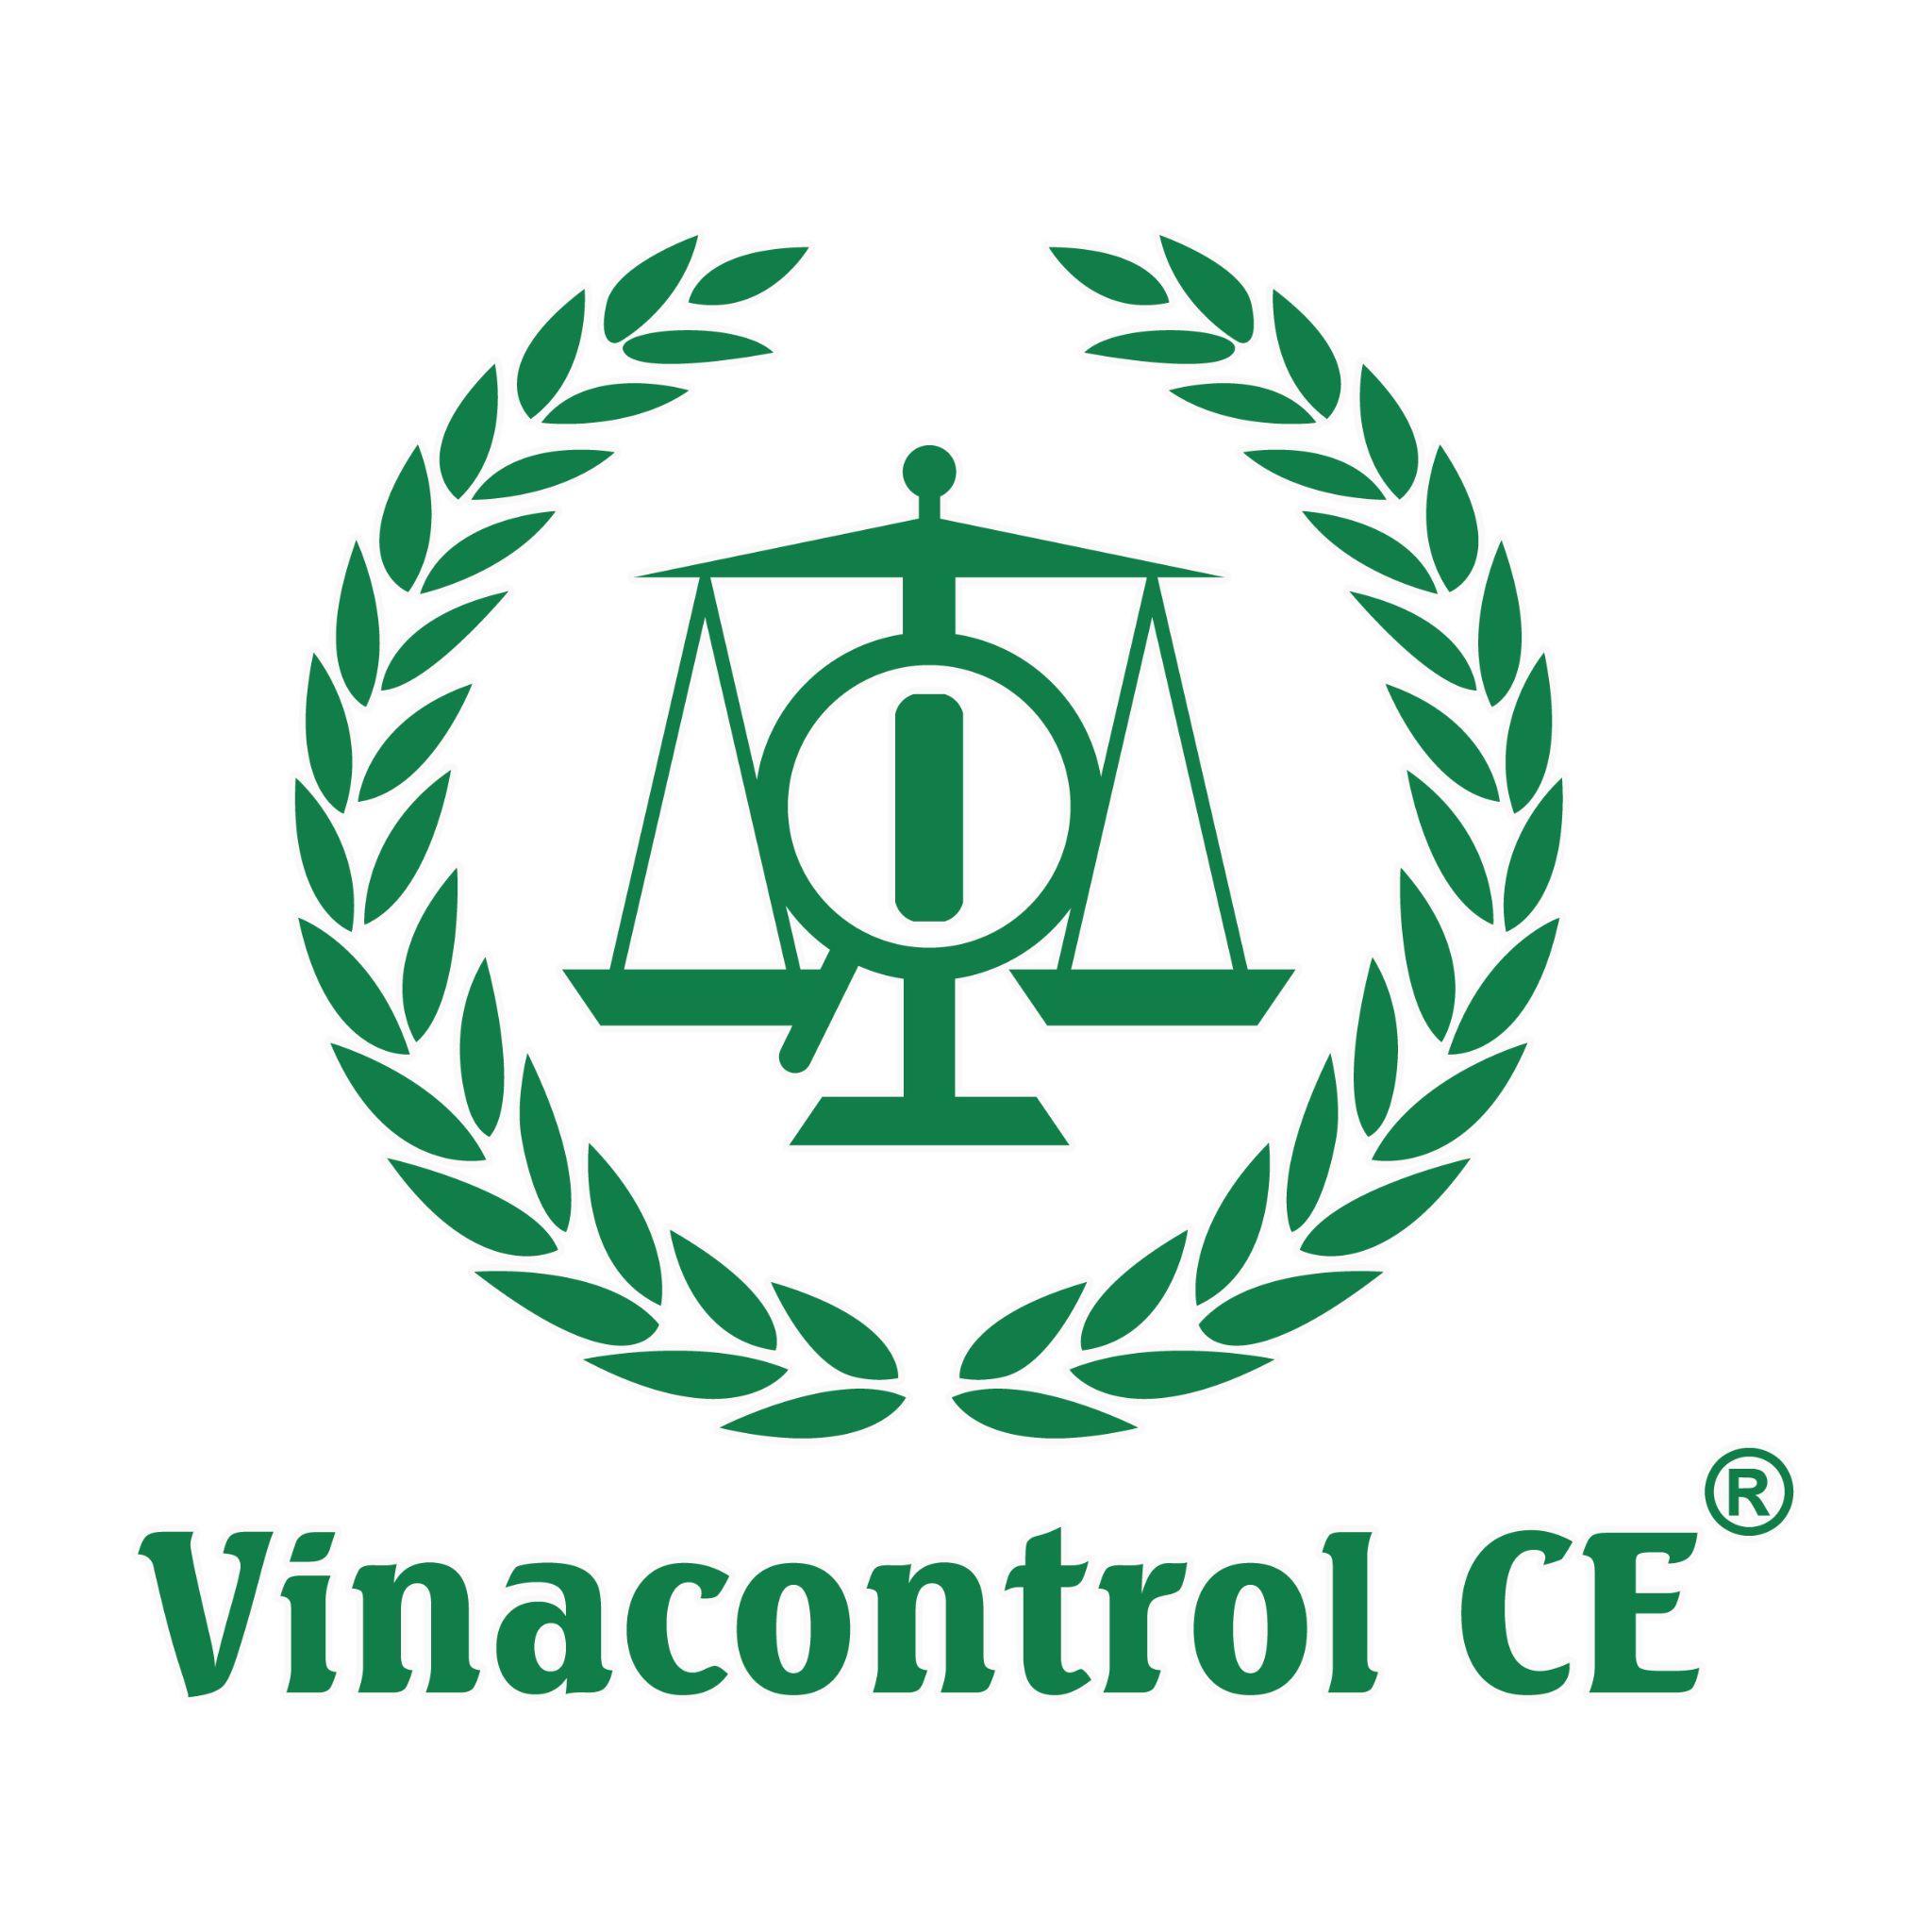 Vinacontrol CE Hồ Chí Minh cam kết lợi ích và giá trị cho doanh nghiệp tại Việt Nam - 1